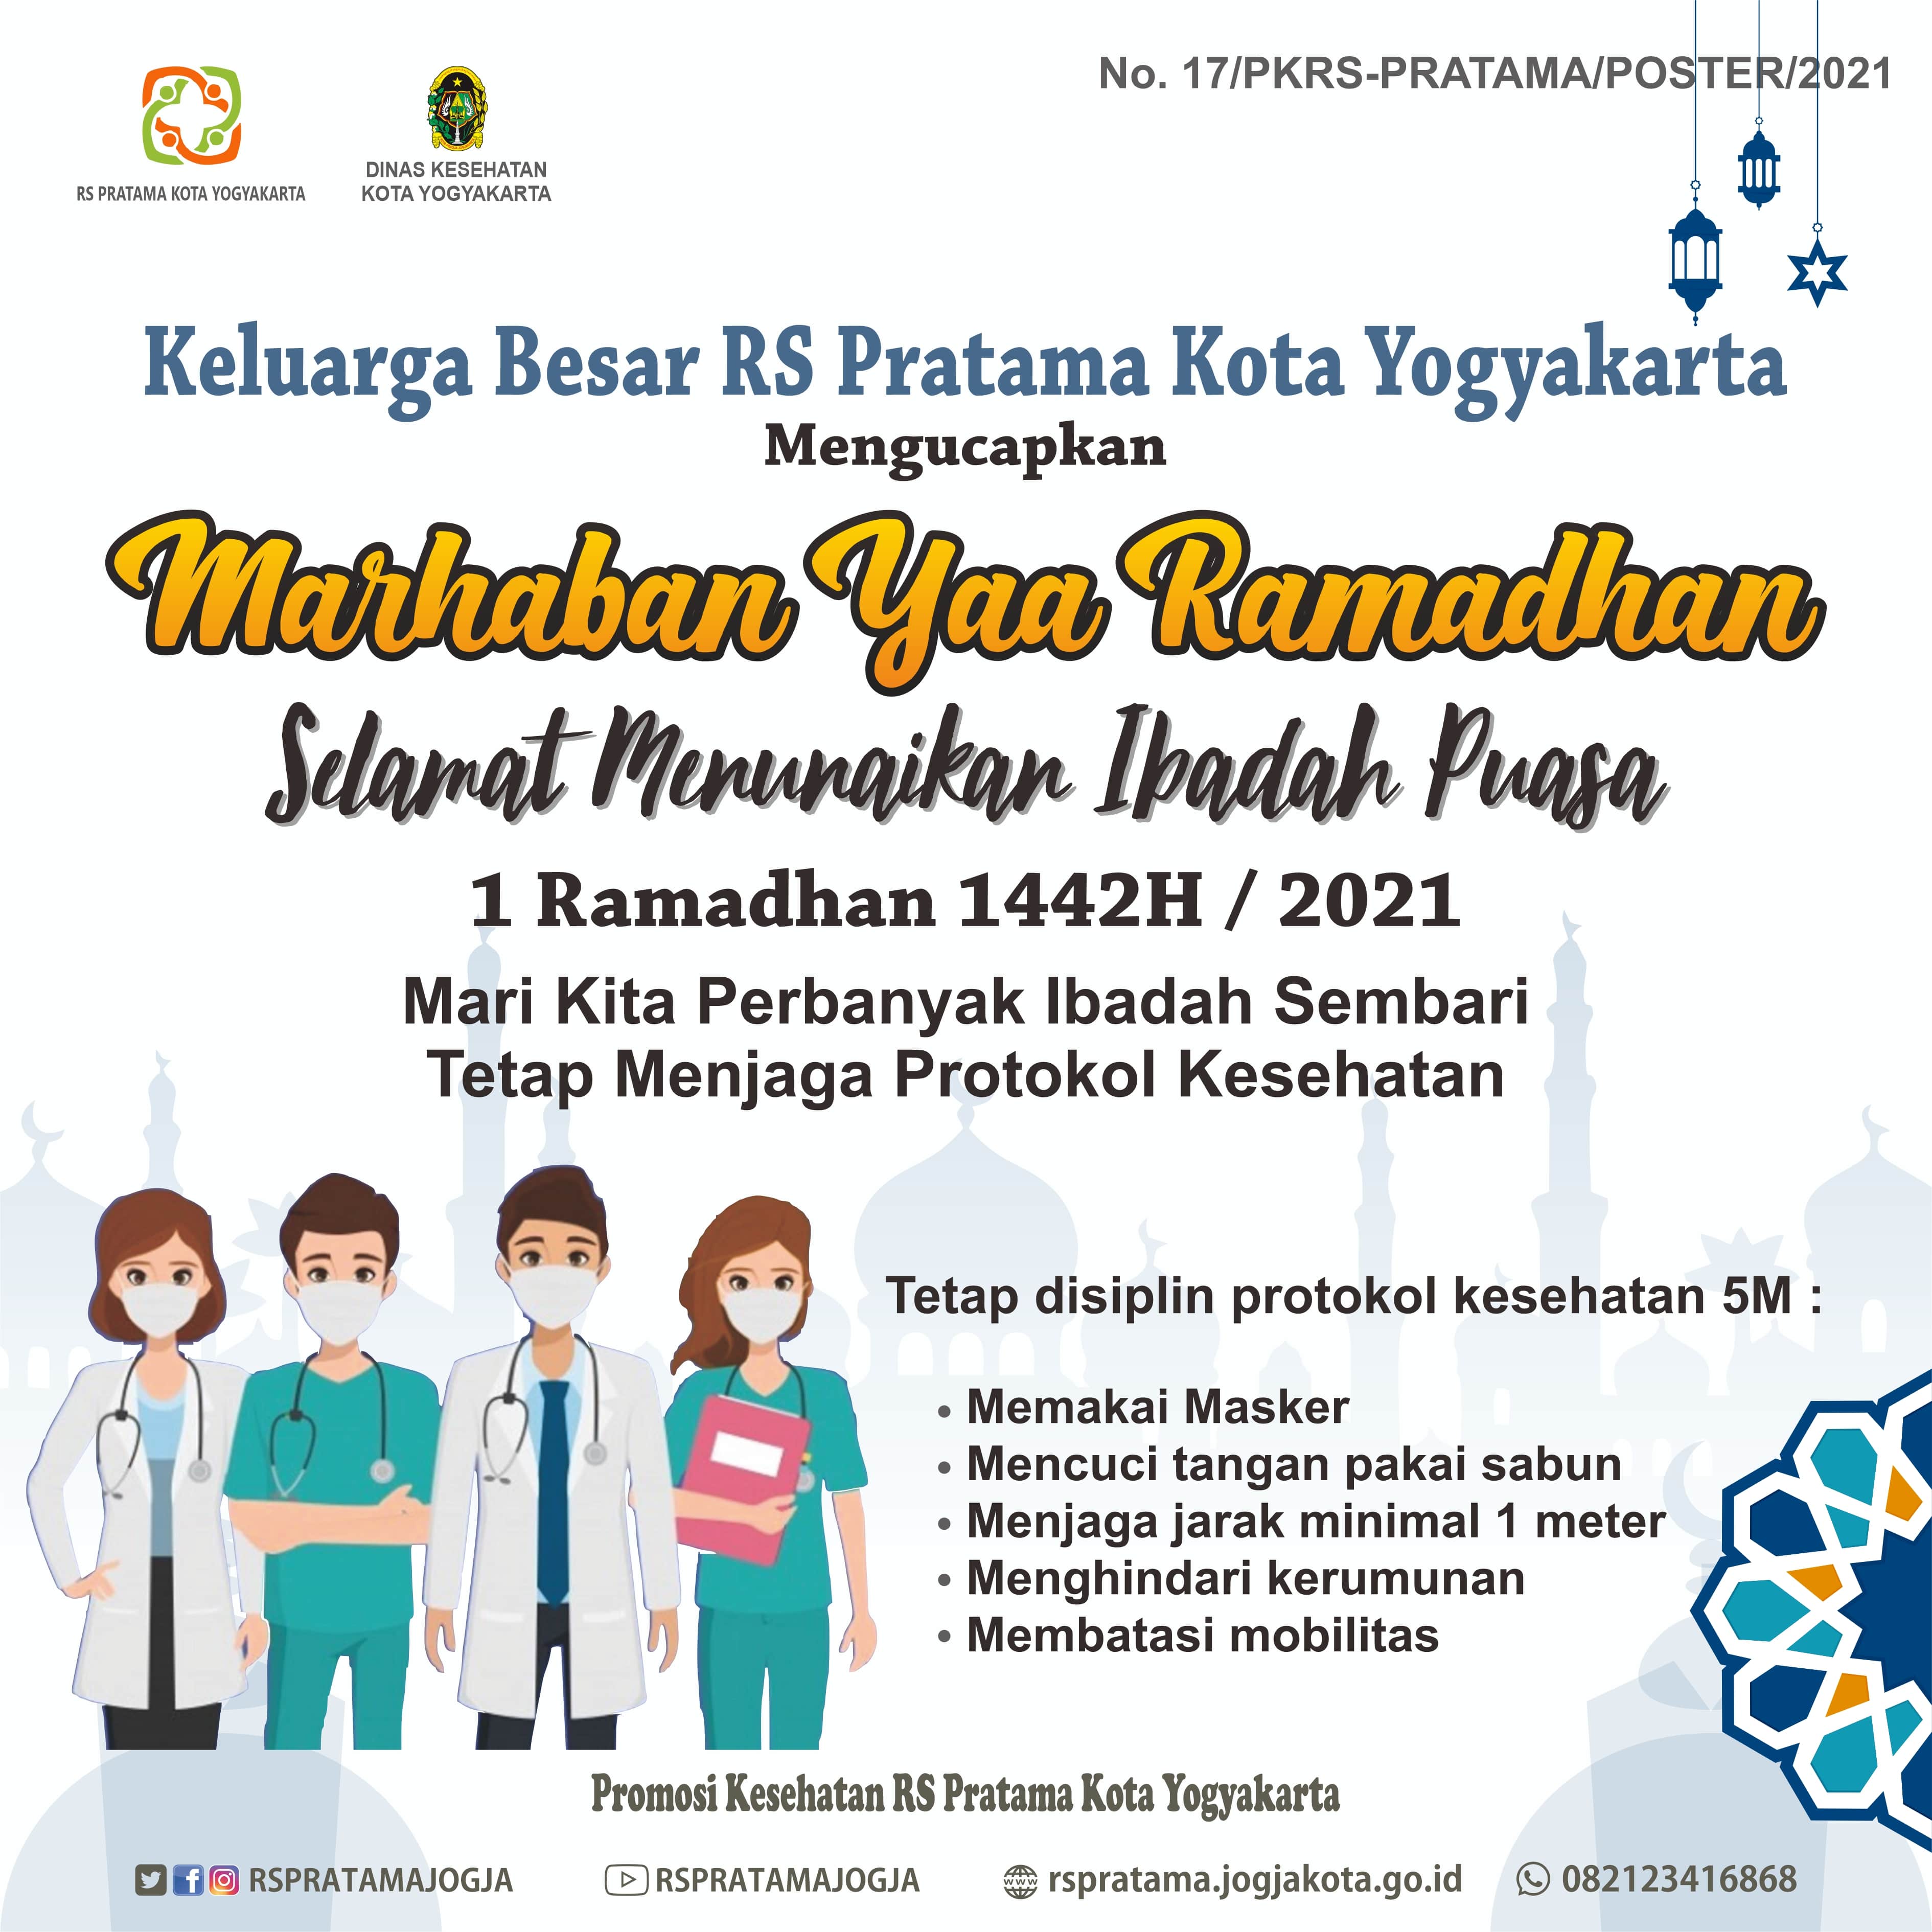 Keluarga Besar RS Pratama Kota Yogyakarta Mengucapkan Marhaban Yaa Ramadhan